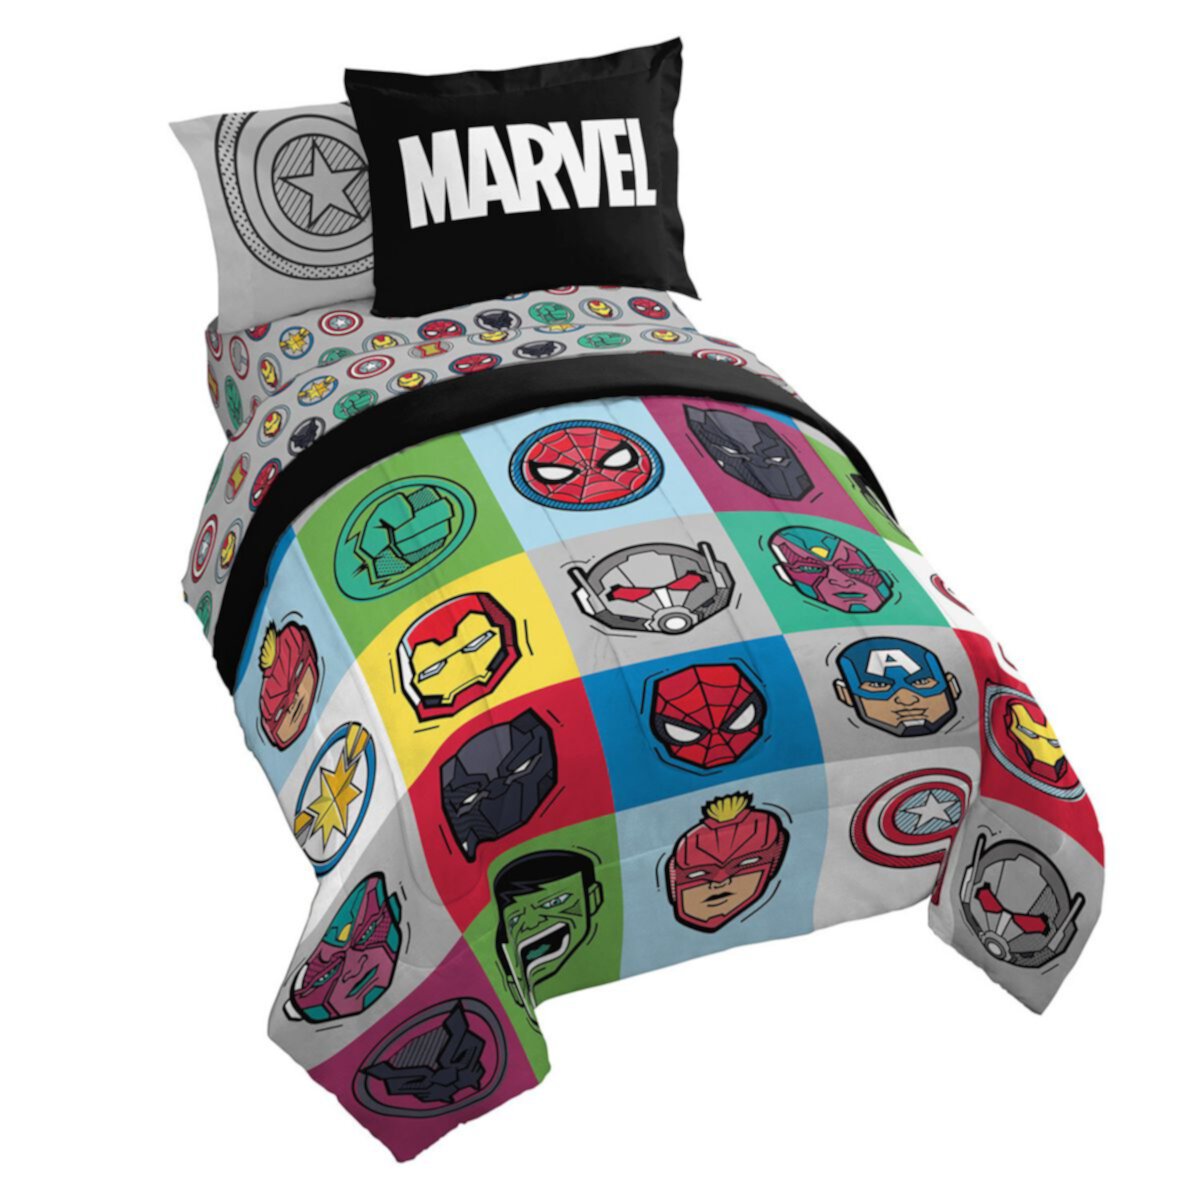 Комплект одеяла Avengers Pop с накидкой Licensed Character